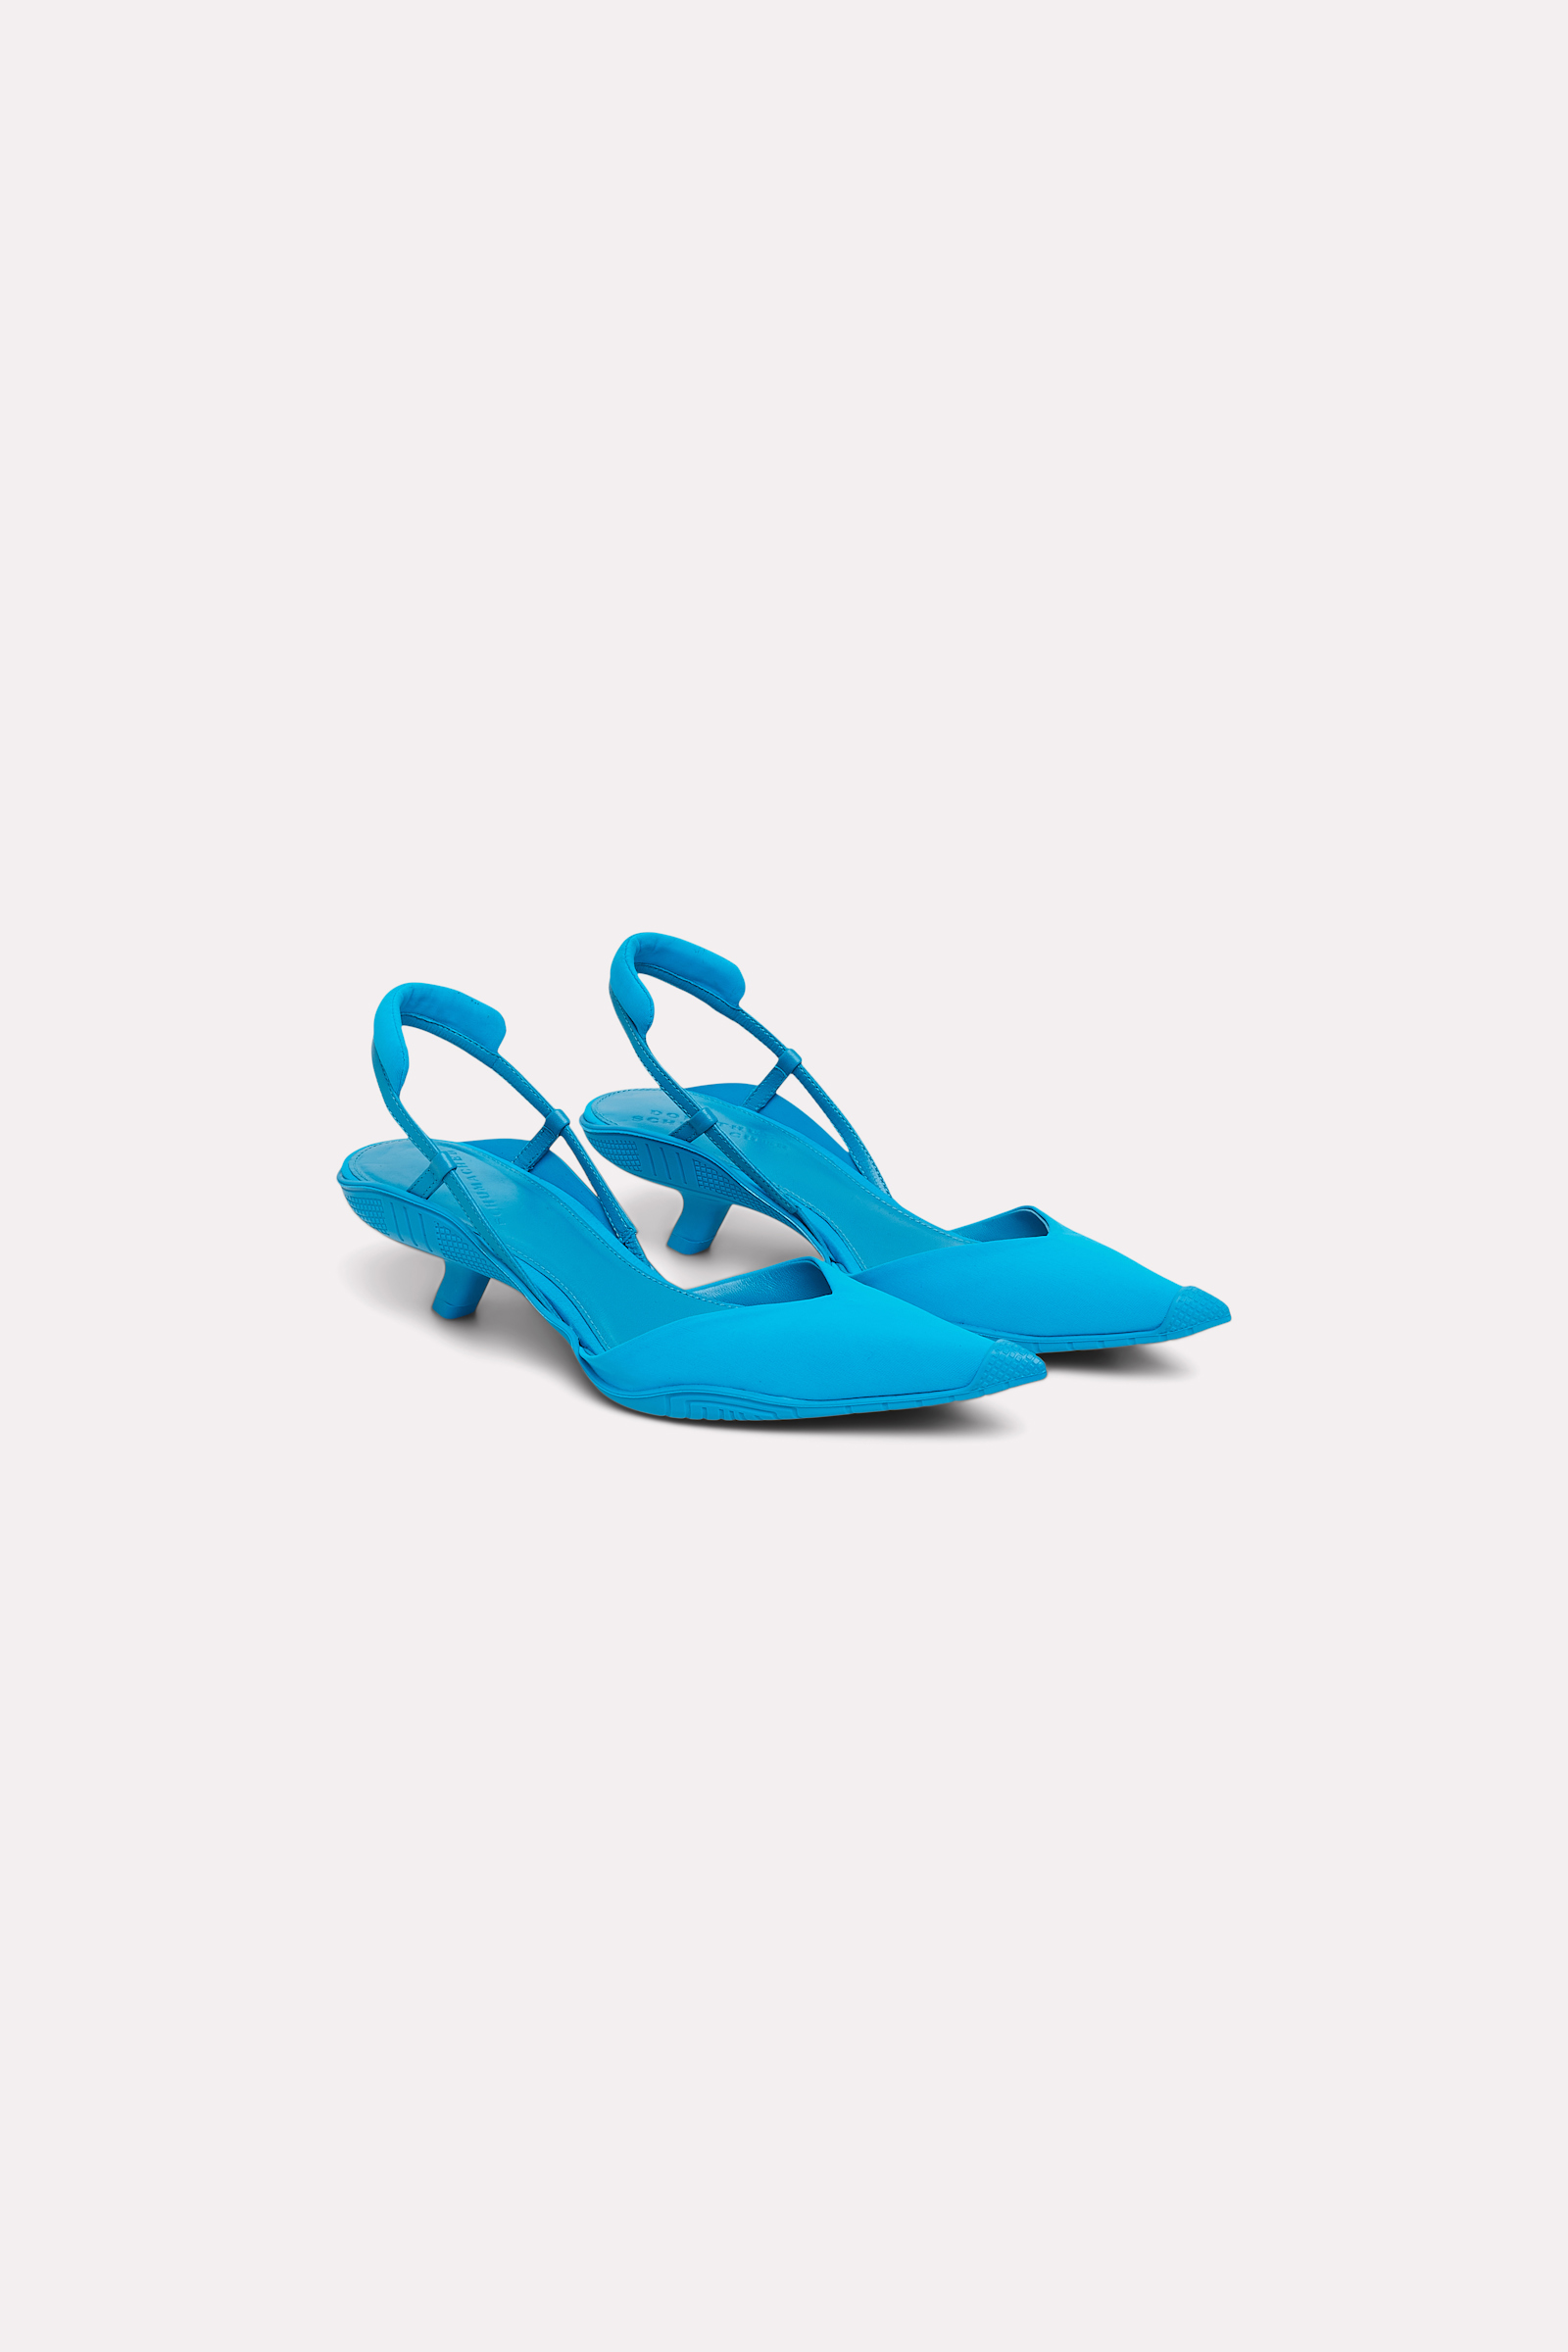 Dorothee Schumacher Kitten Heel aus Materialmix aqua blue